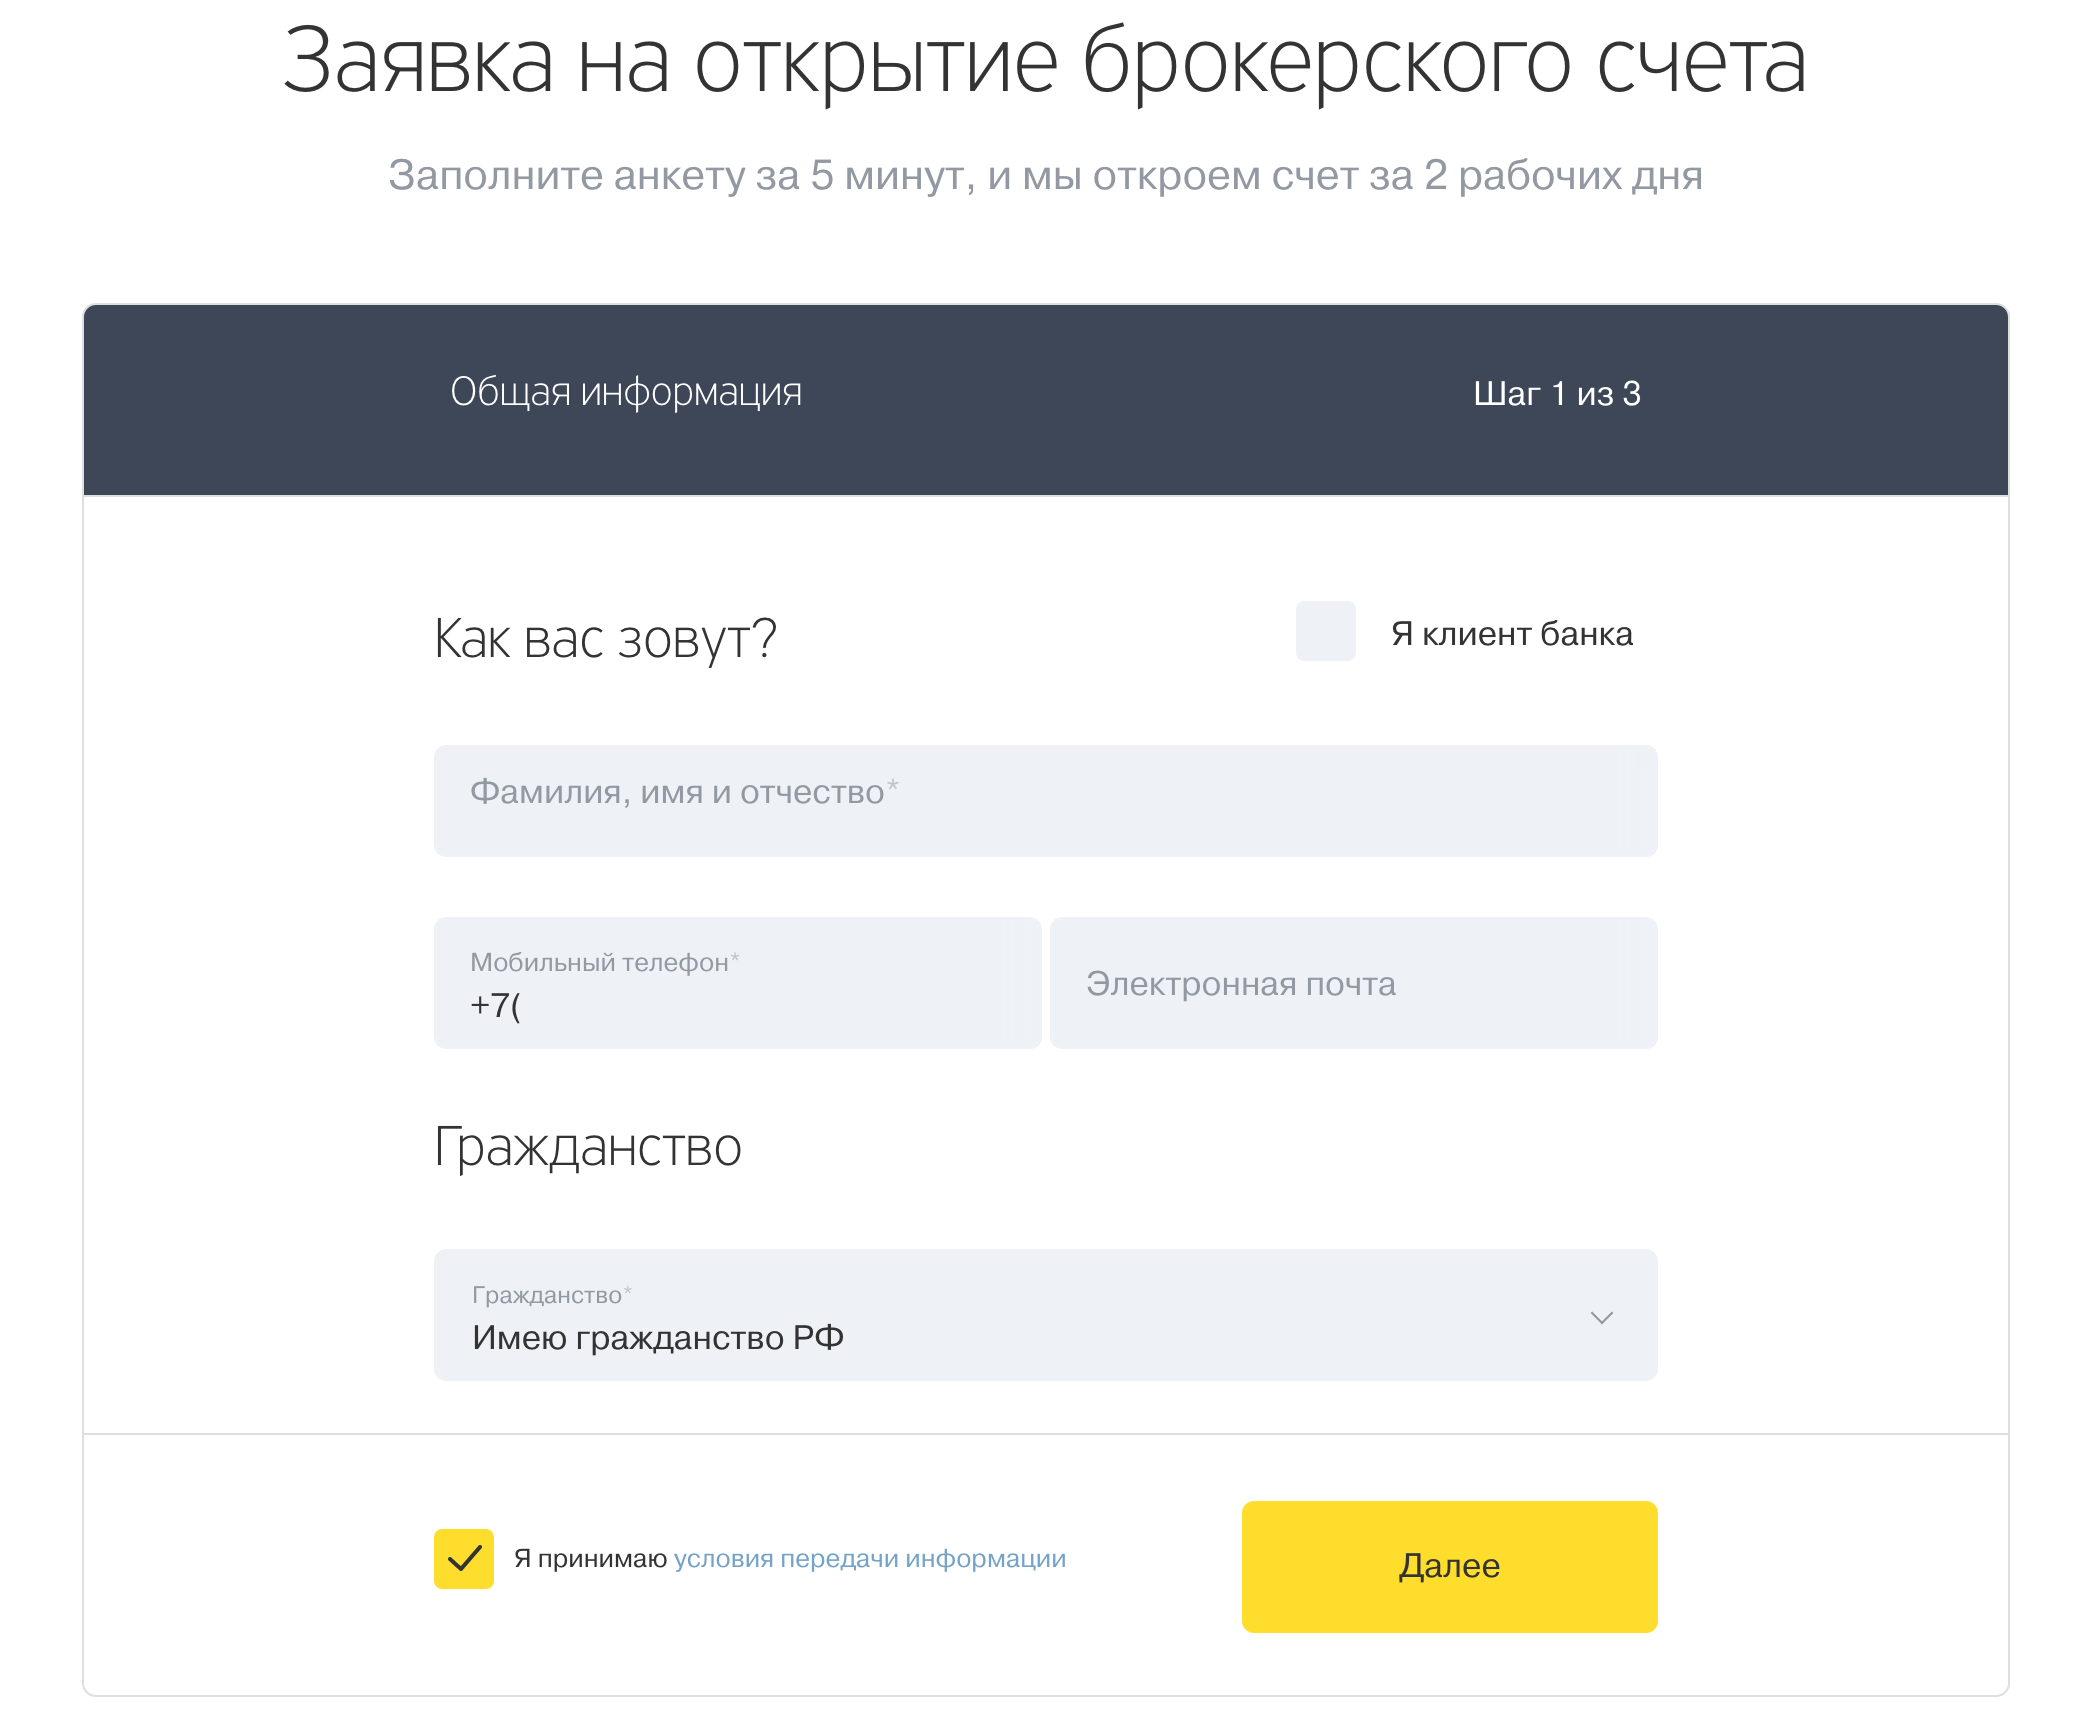 Как купить акции Яндекса физическому лицу